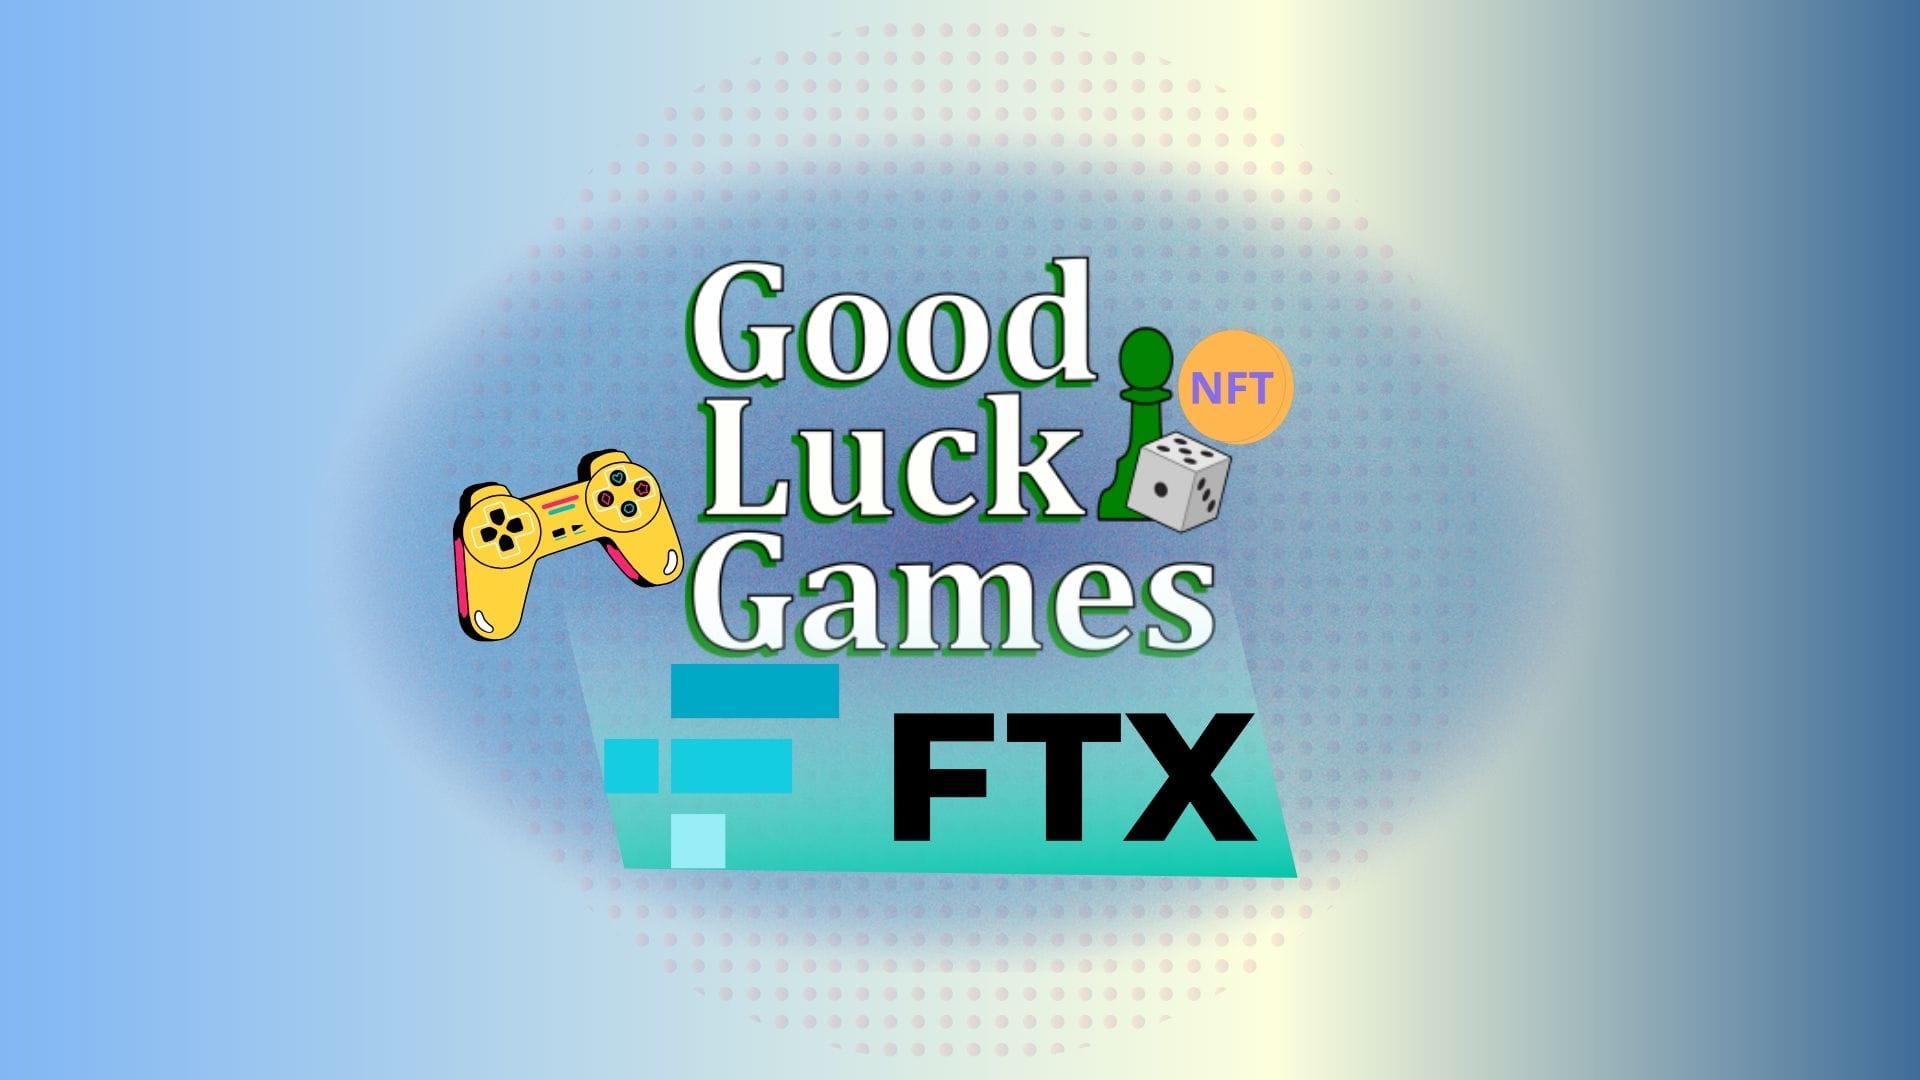 FTX купили игровую студию Good Luck Games